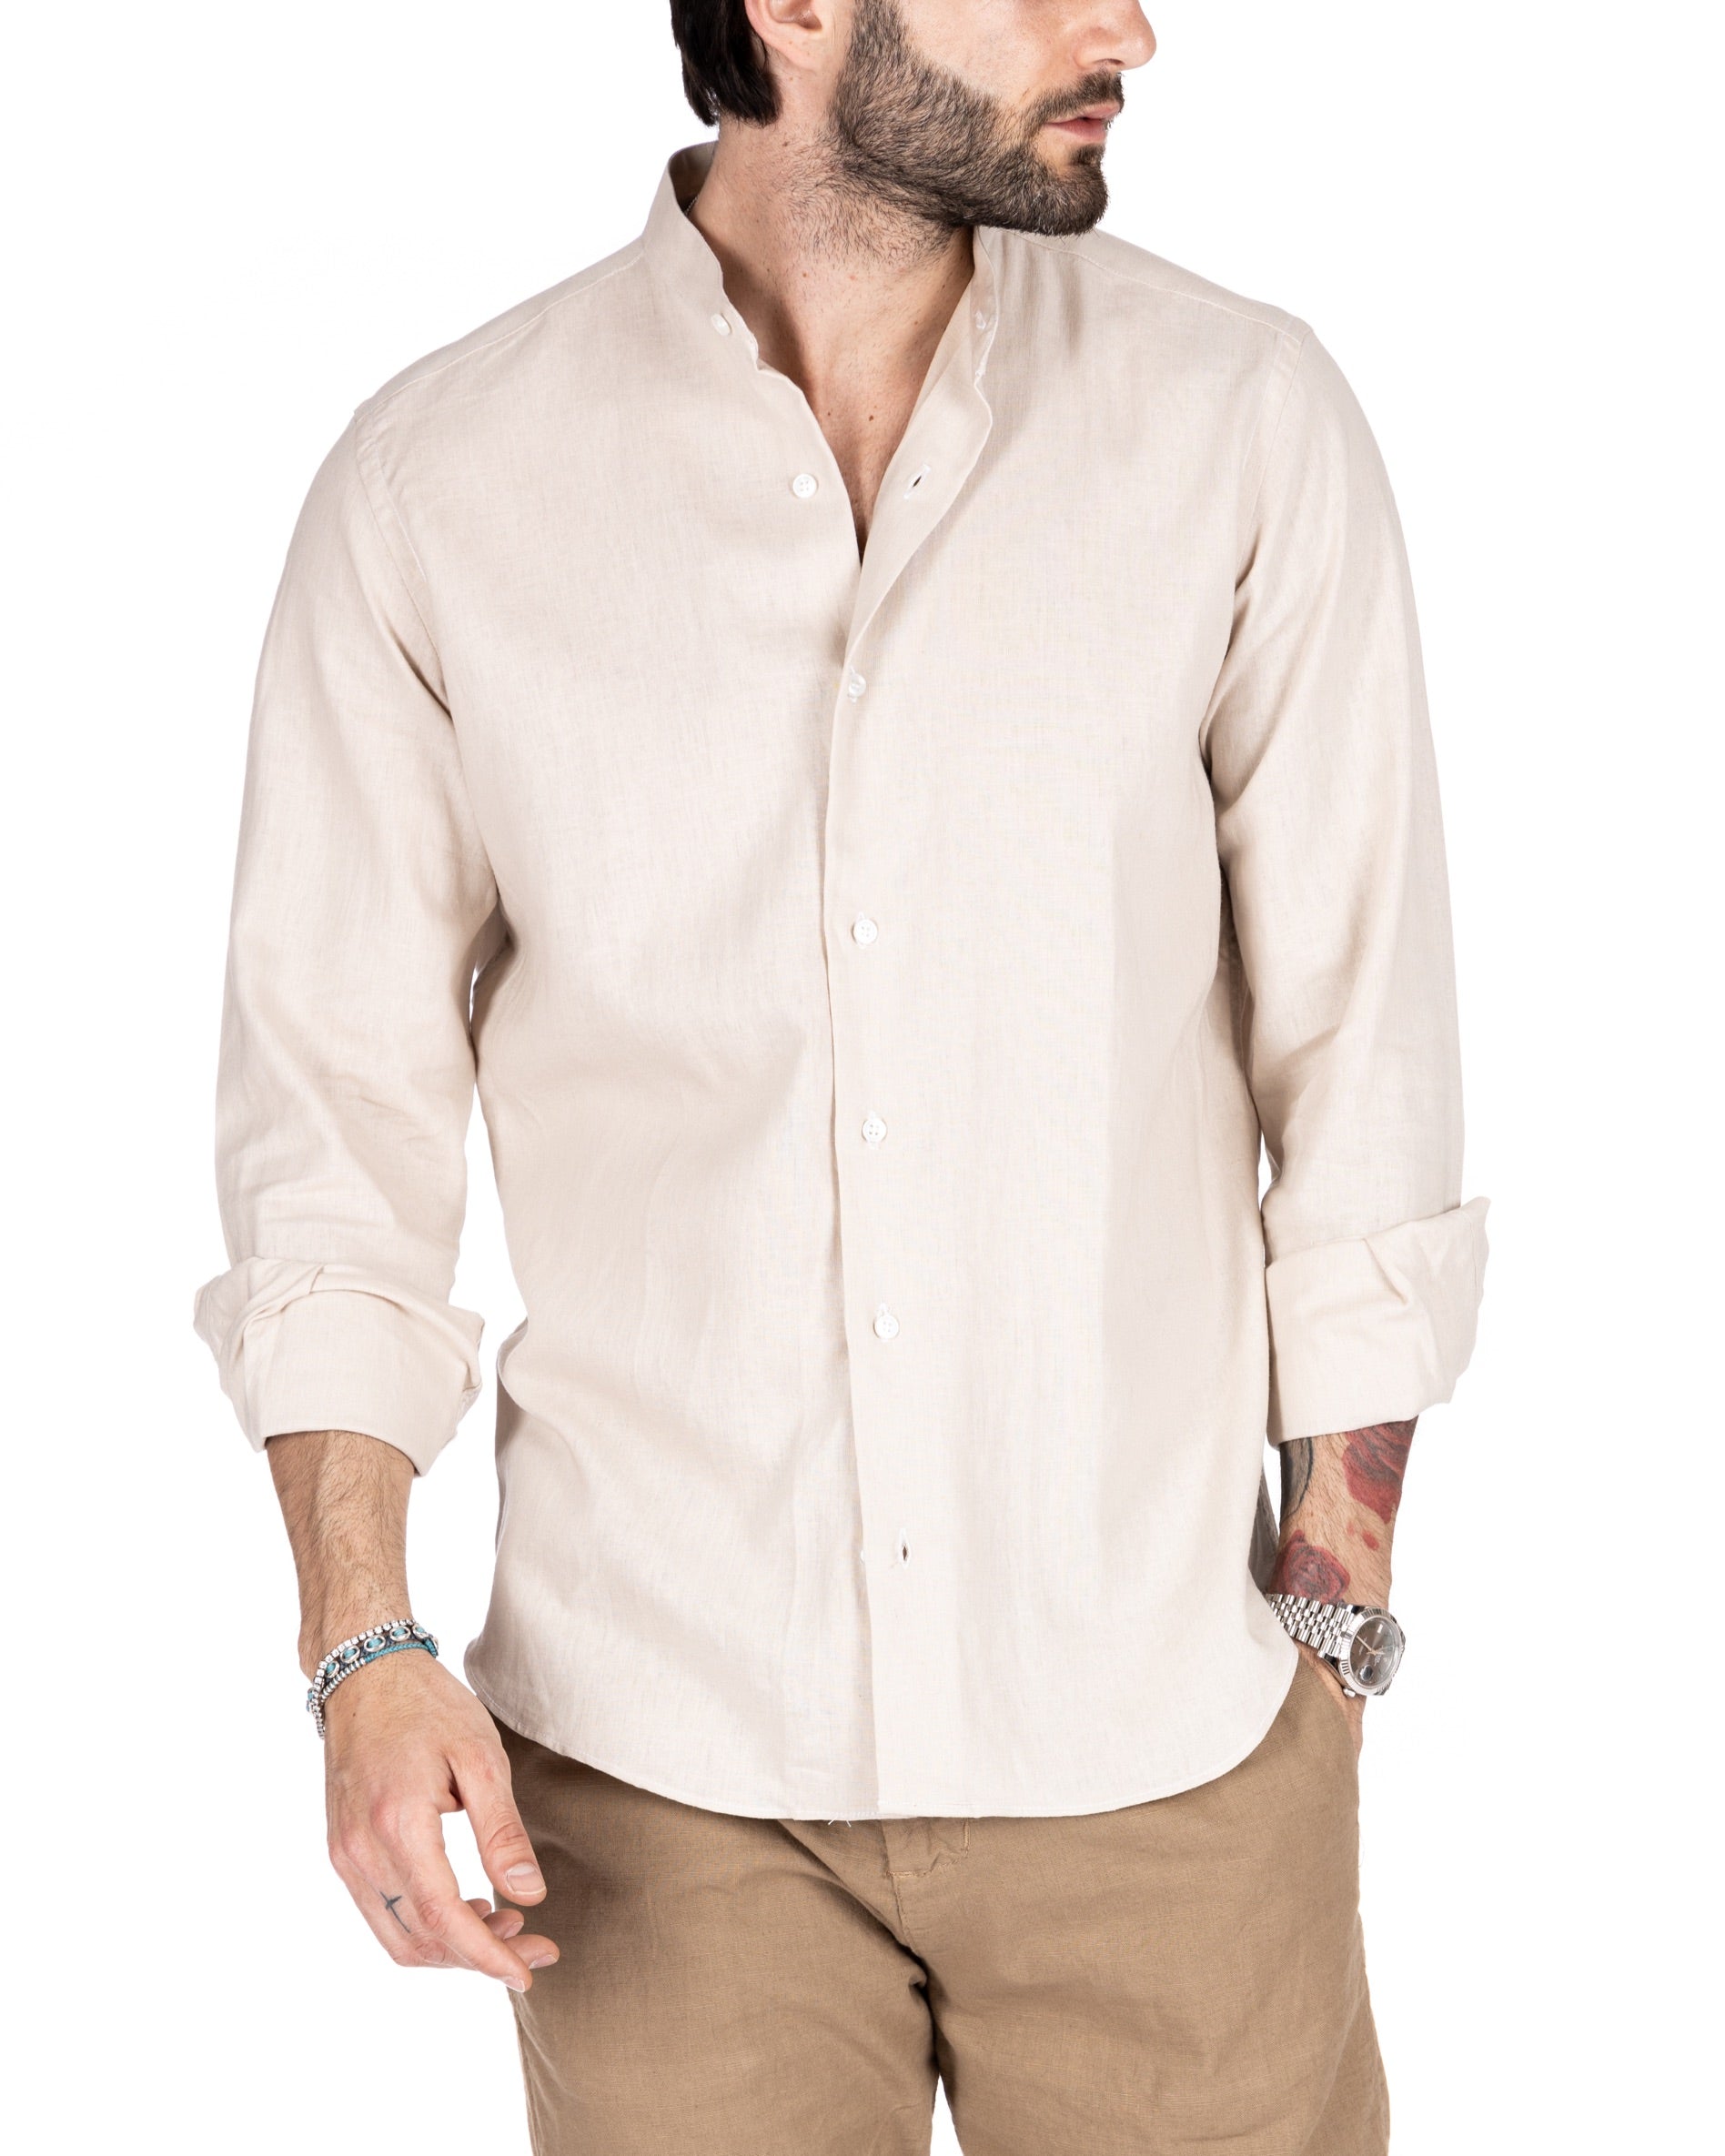 Positano - Beige Korean linen shirt